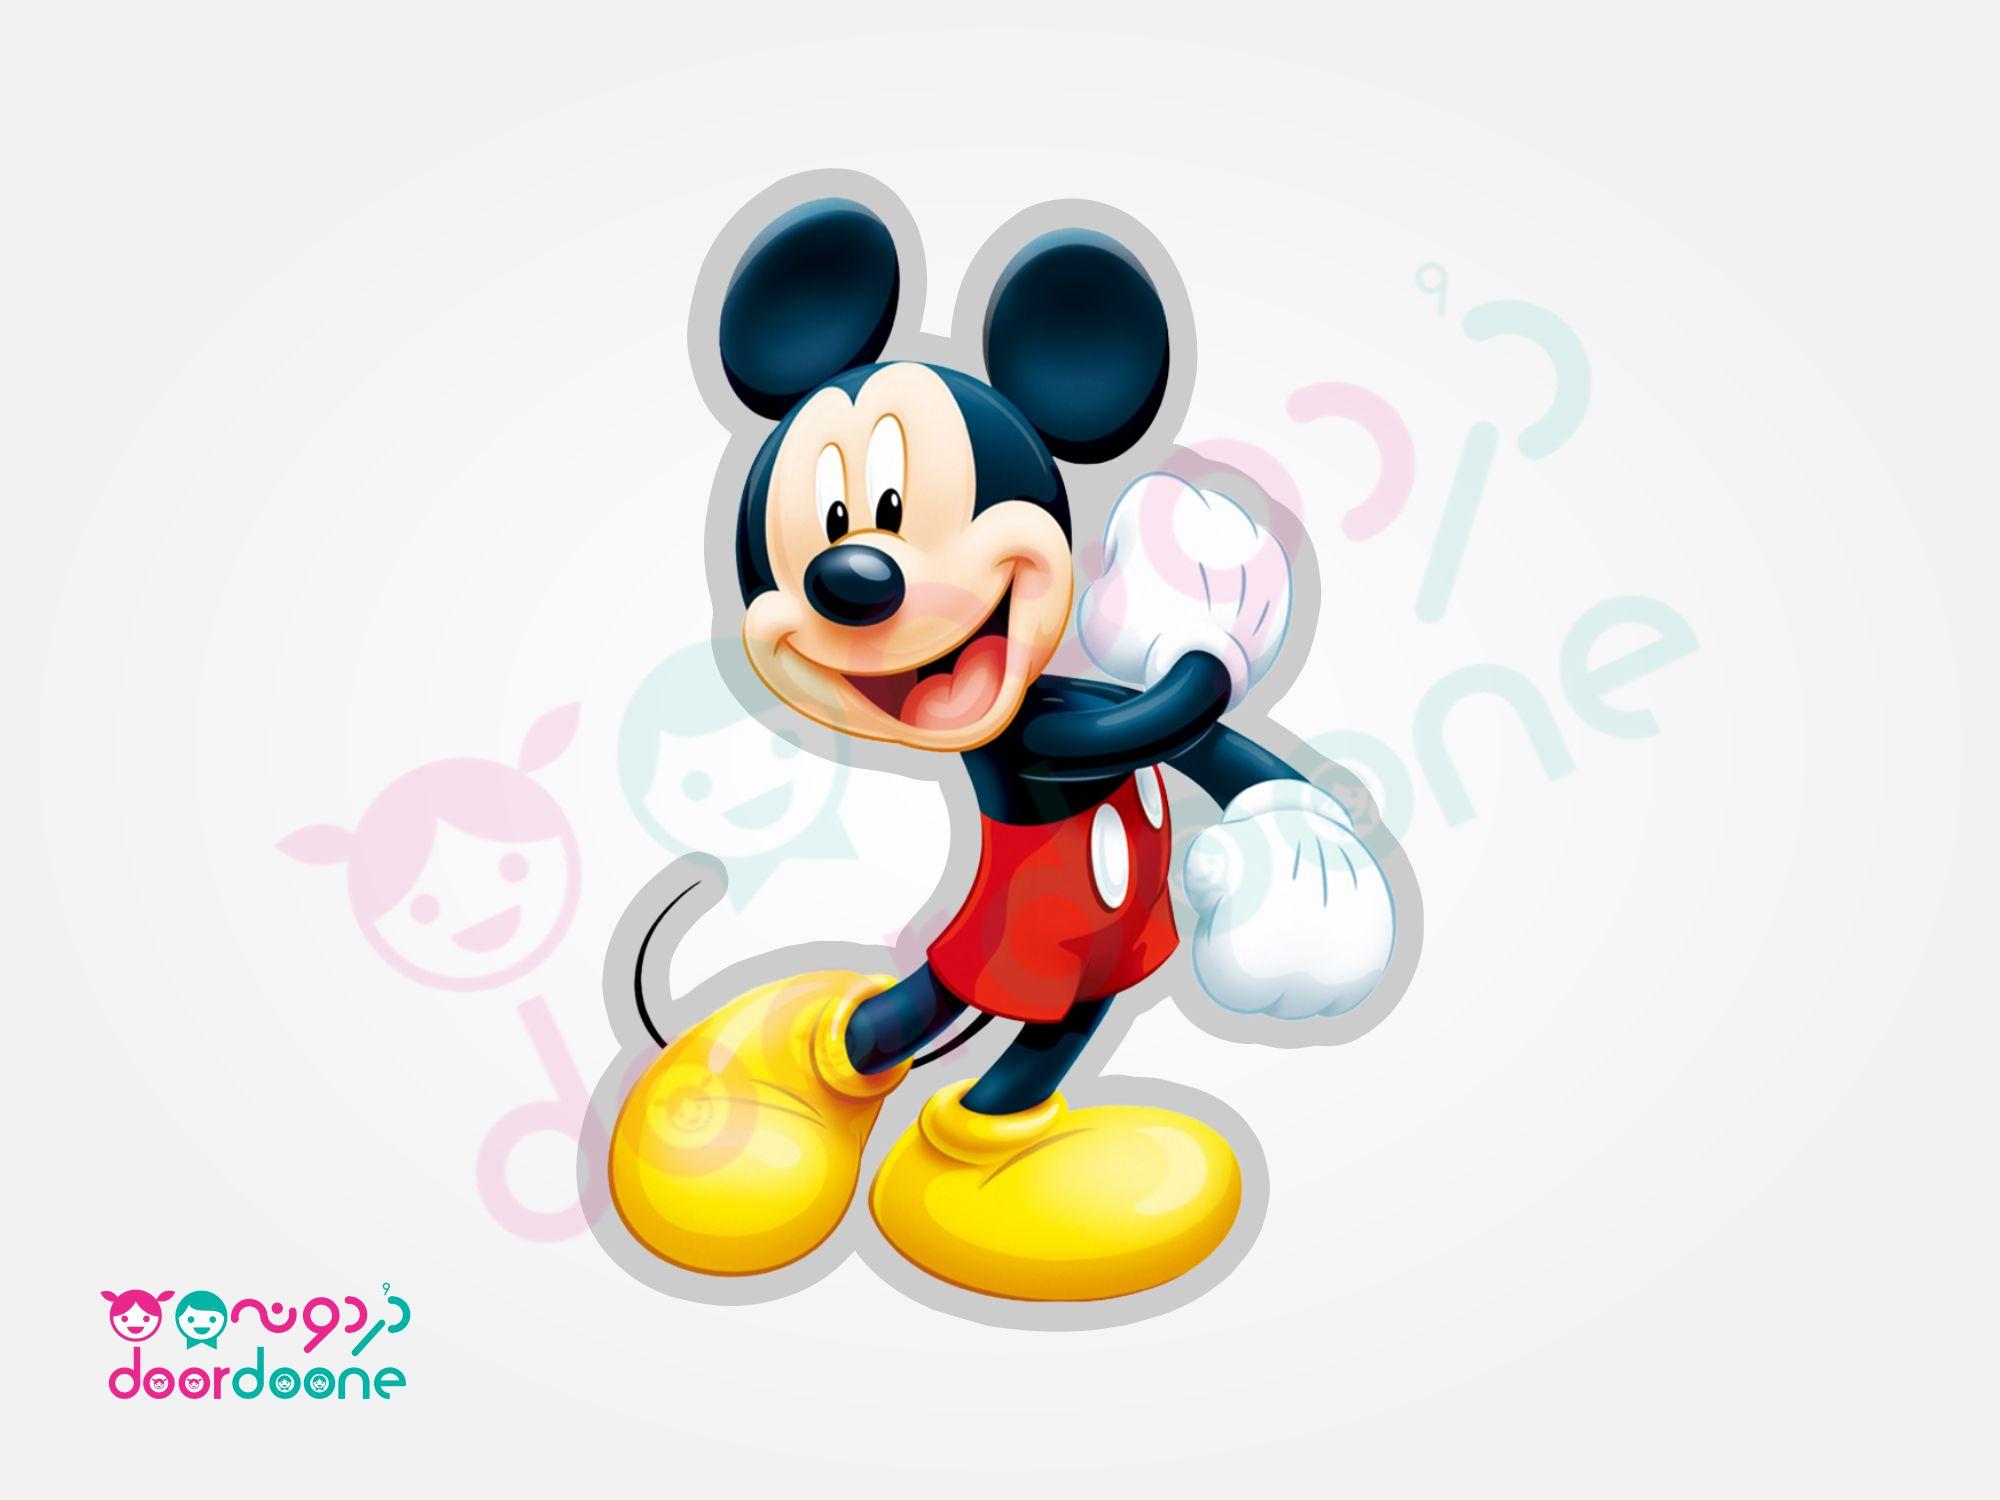 استند ميکی ماوس (Mikey Mouse) - ارتفاع 50 سانتيمتر